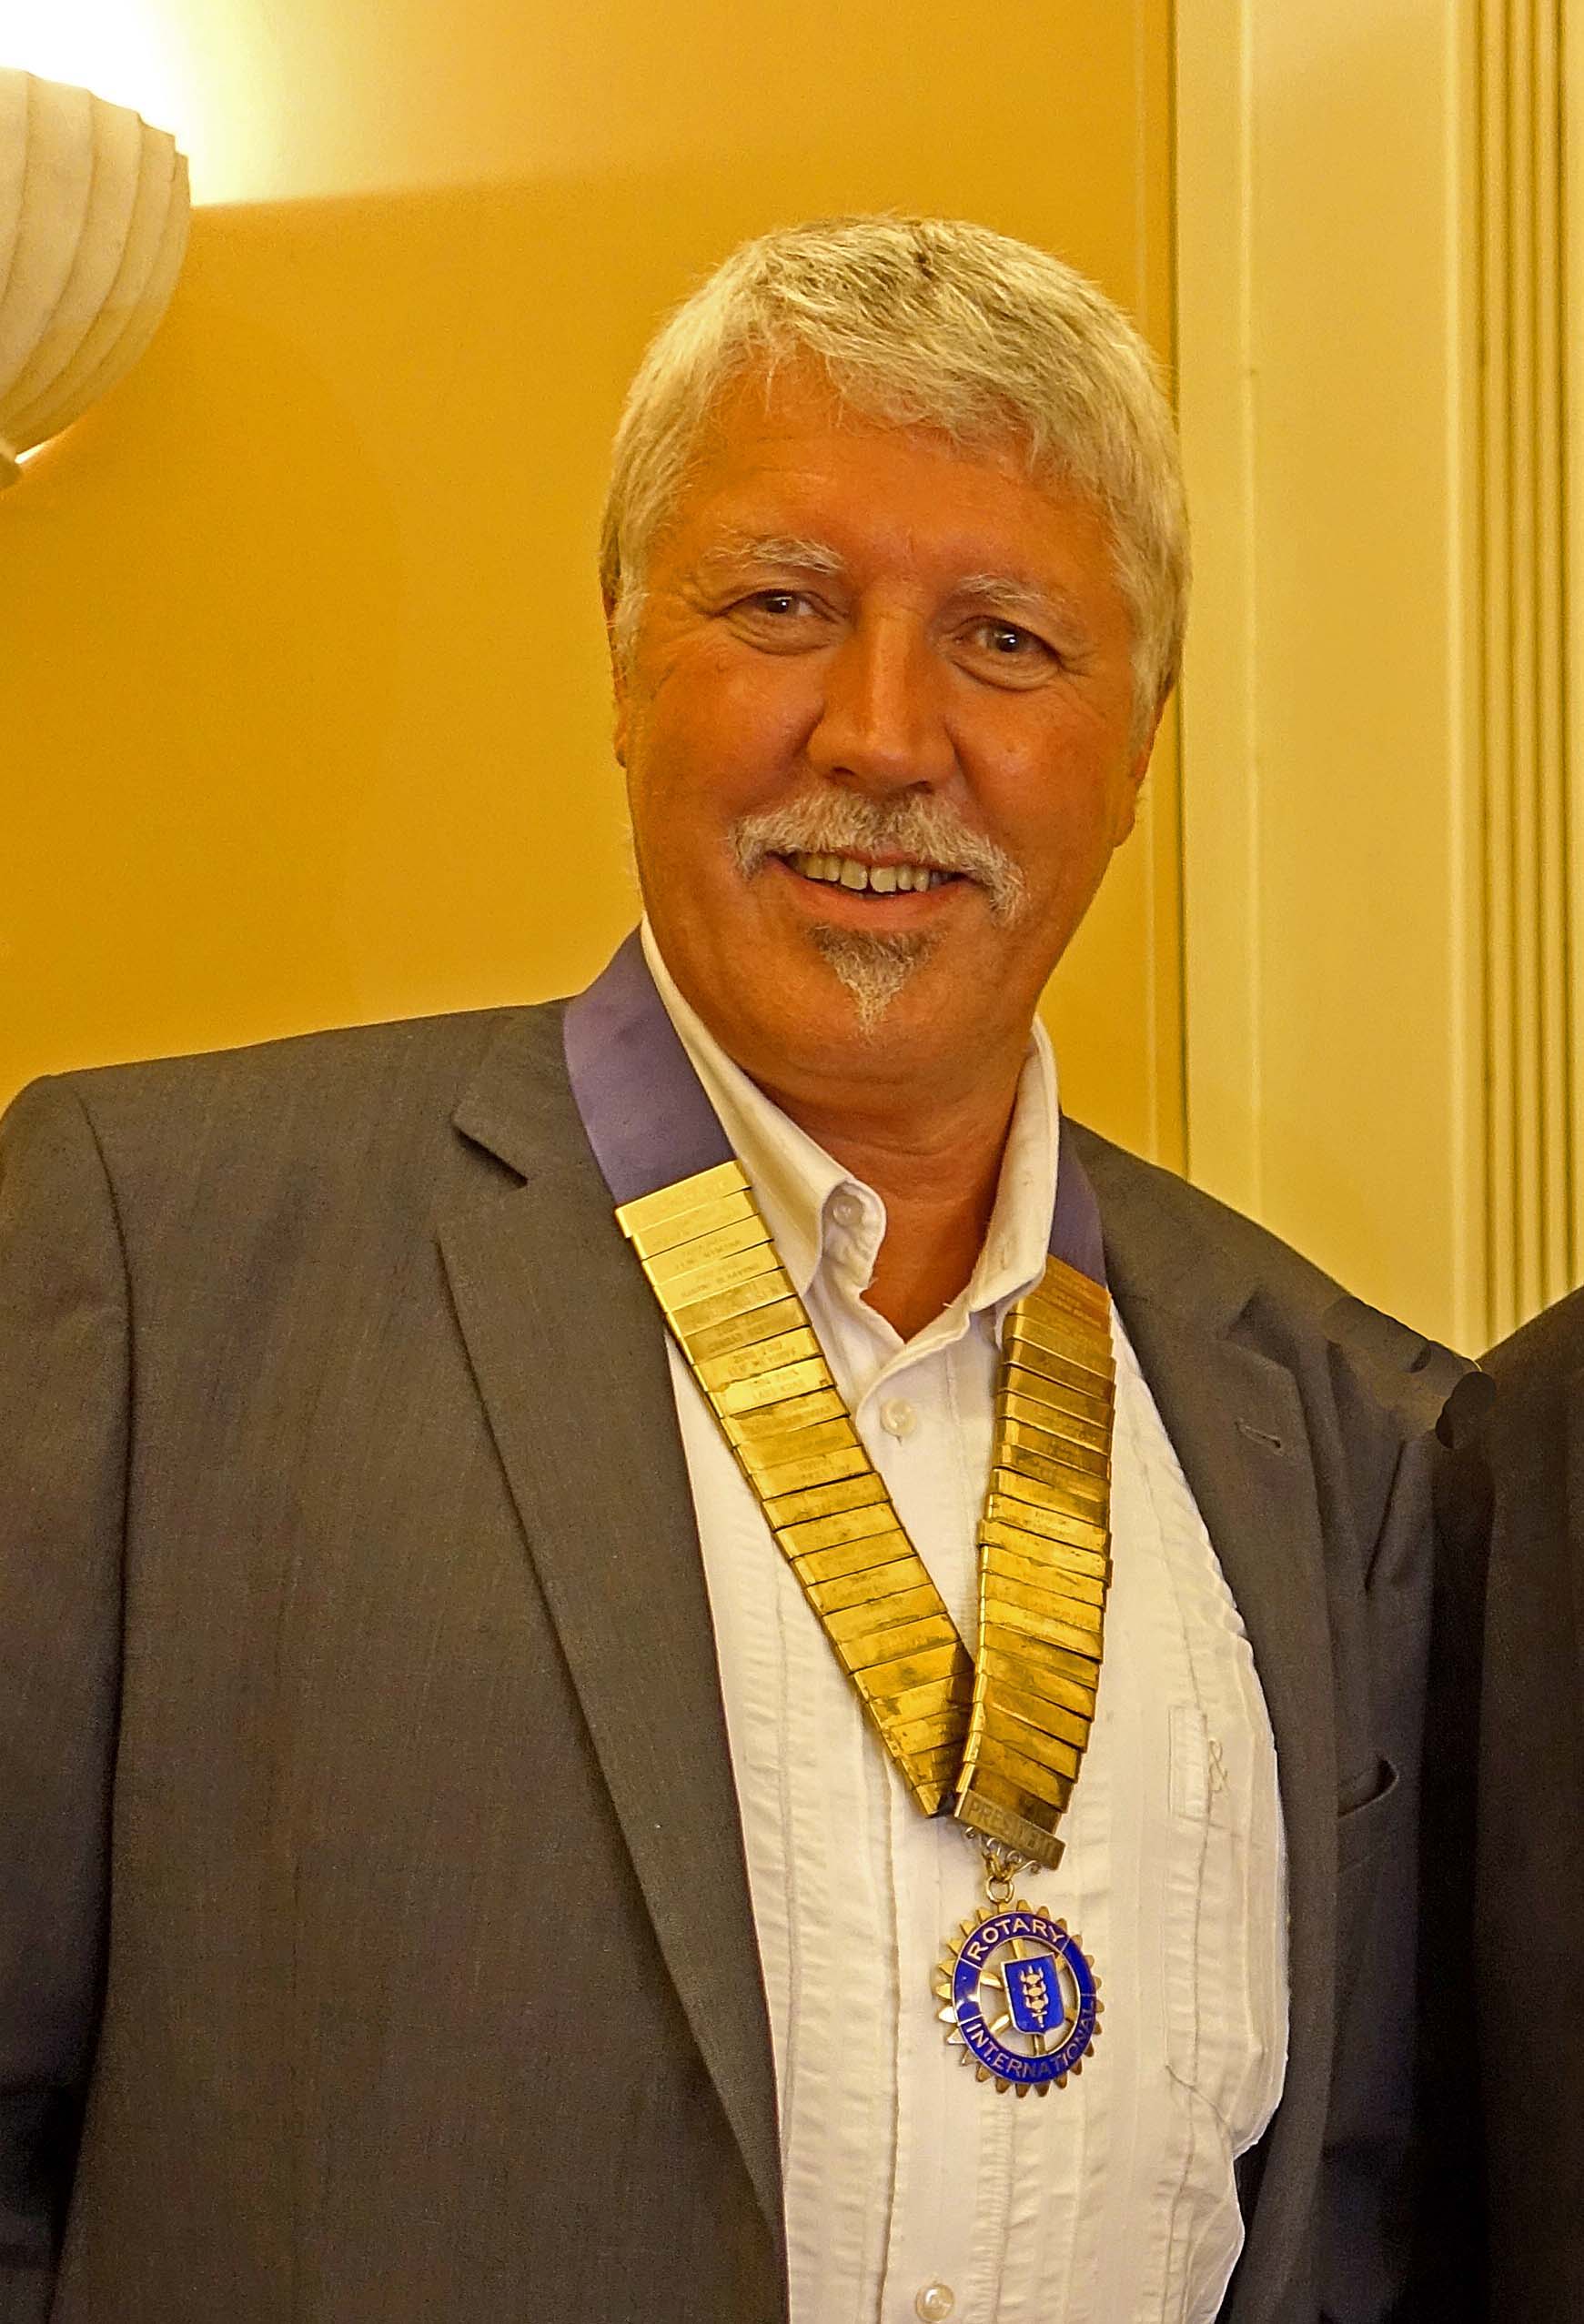 Præsident Helmuth Jørgensen med kæde